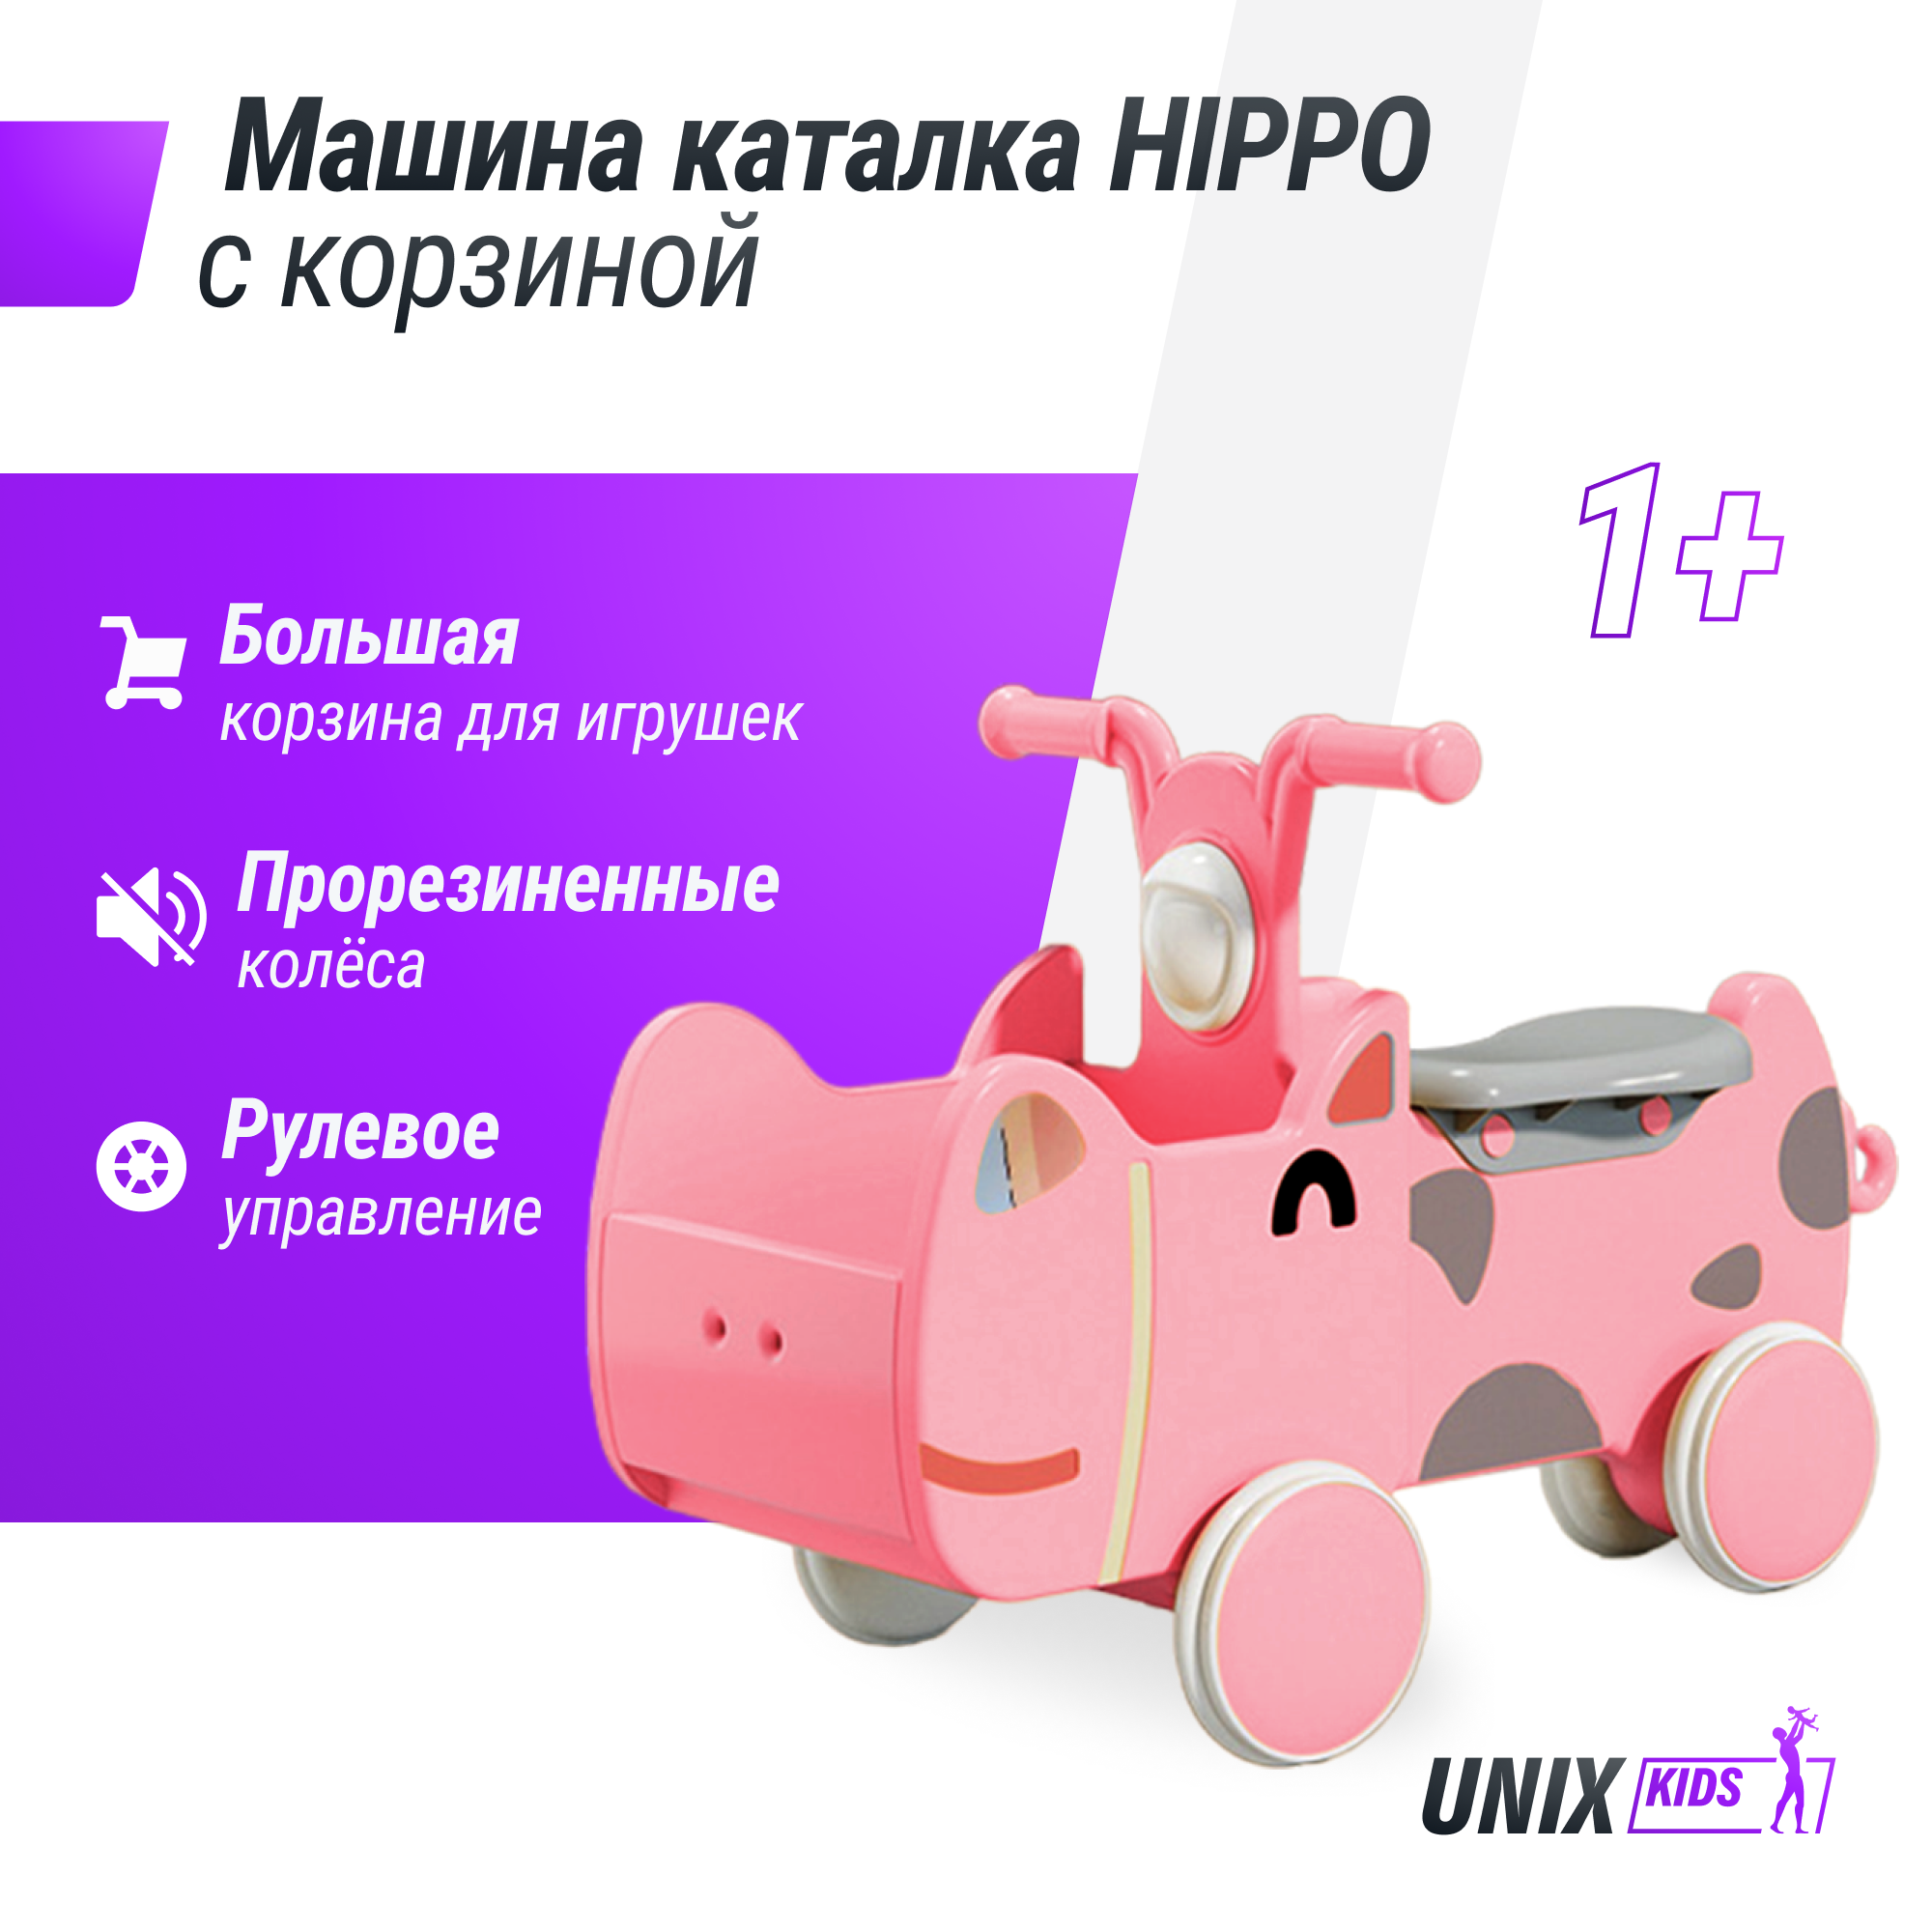 Машинка - каталка для детей с корзиной для игрушек UNIX Kids Hippo с ручками, розовый